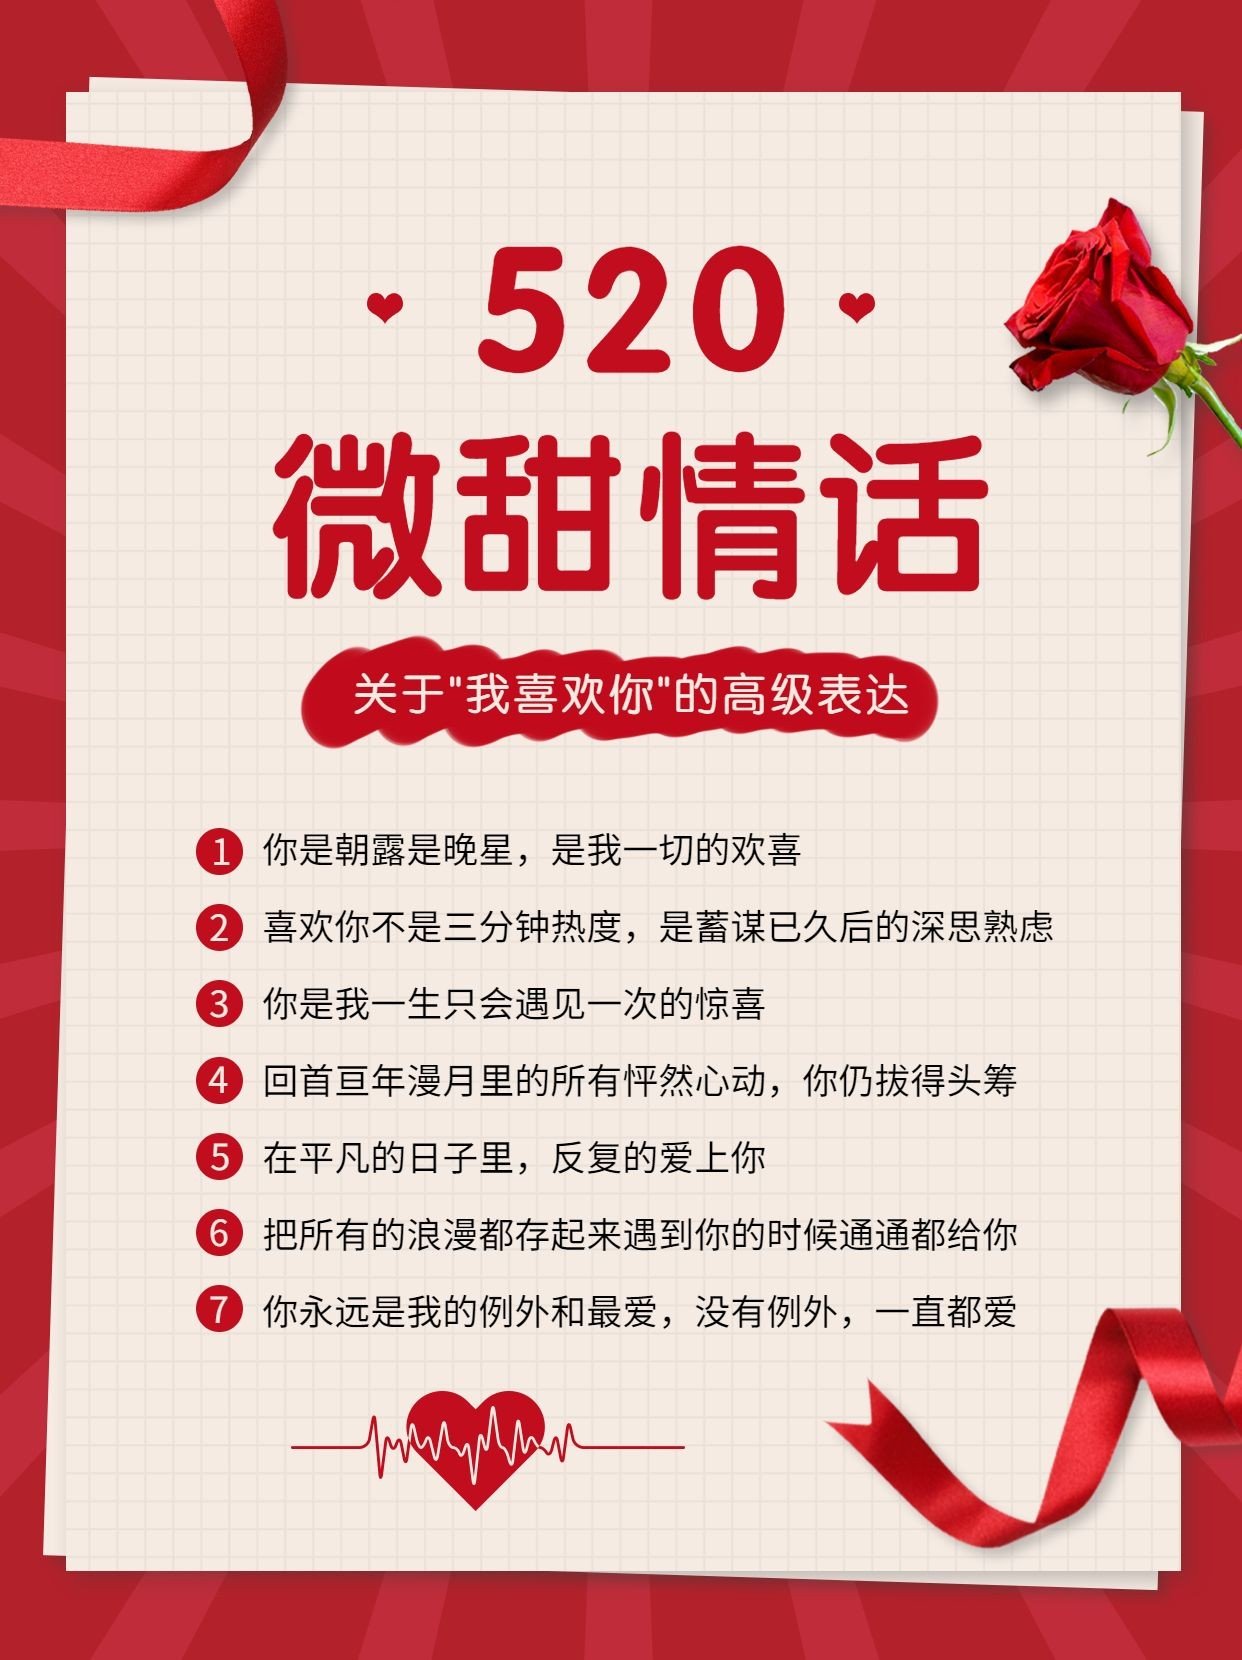 简约时尚520情人节微甜情话小红书配图